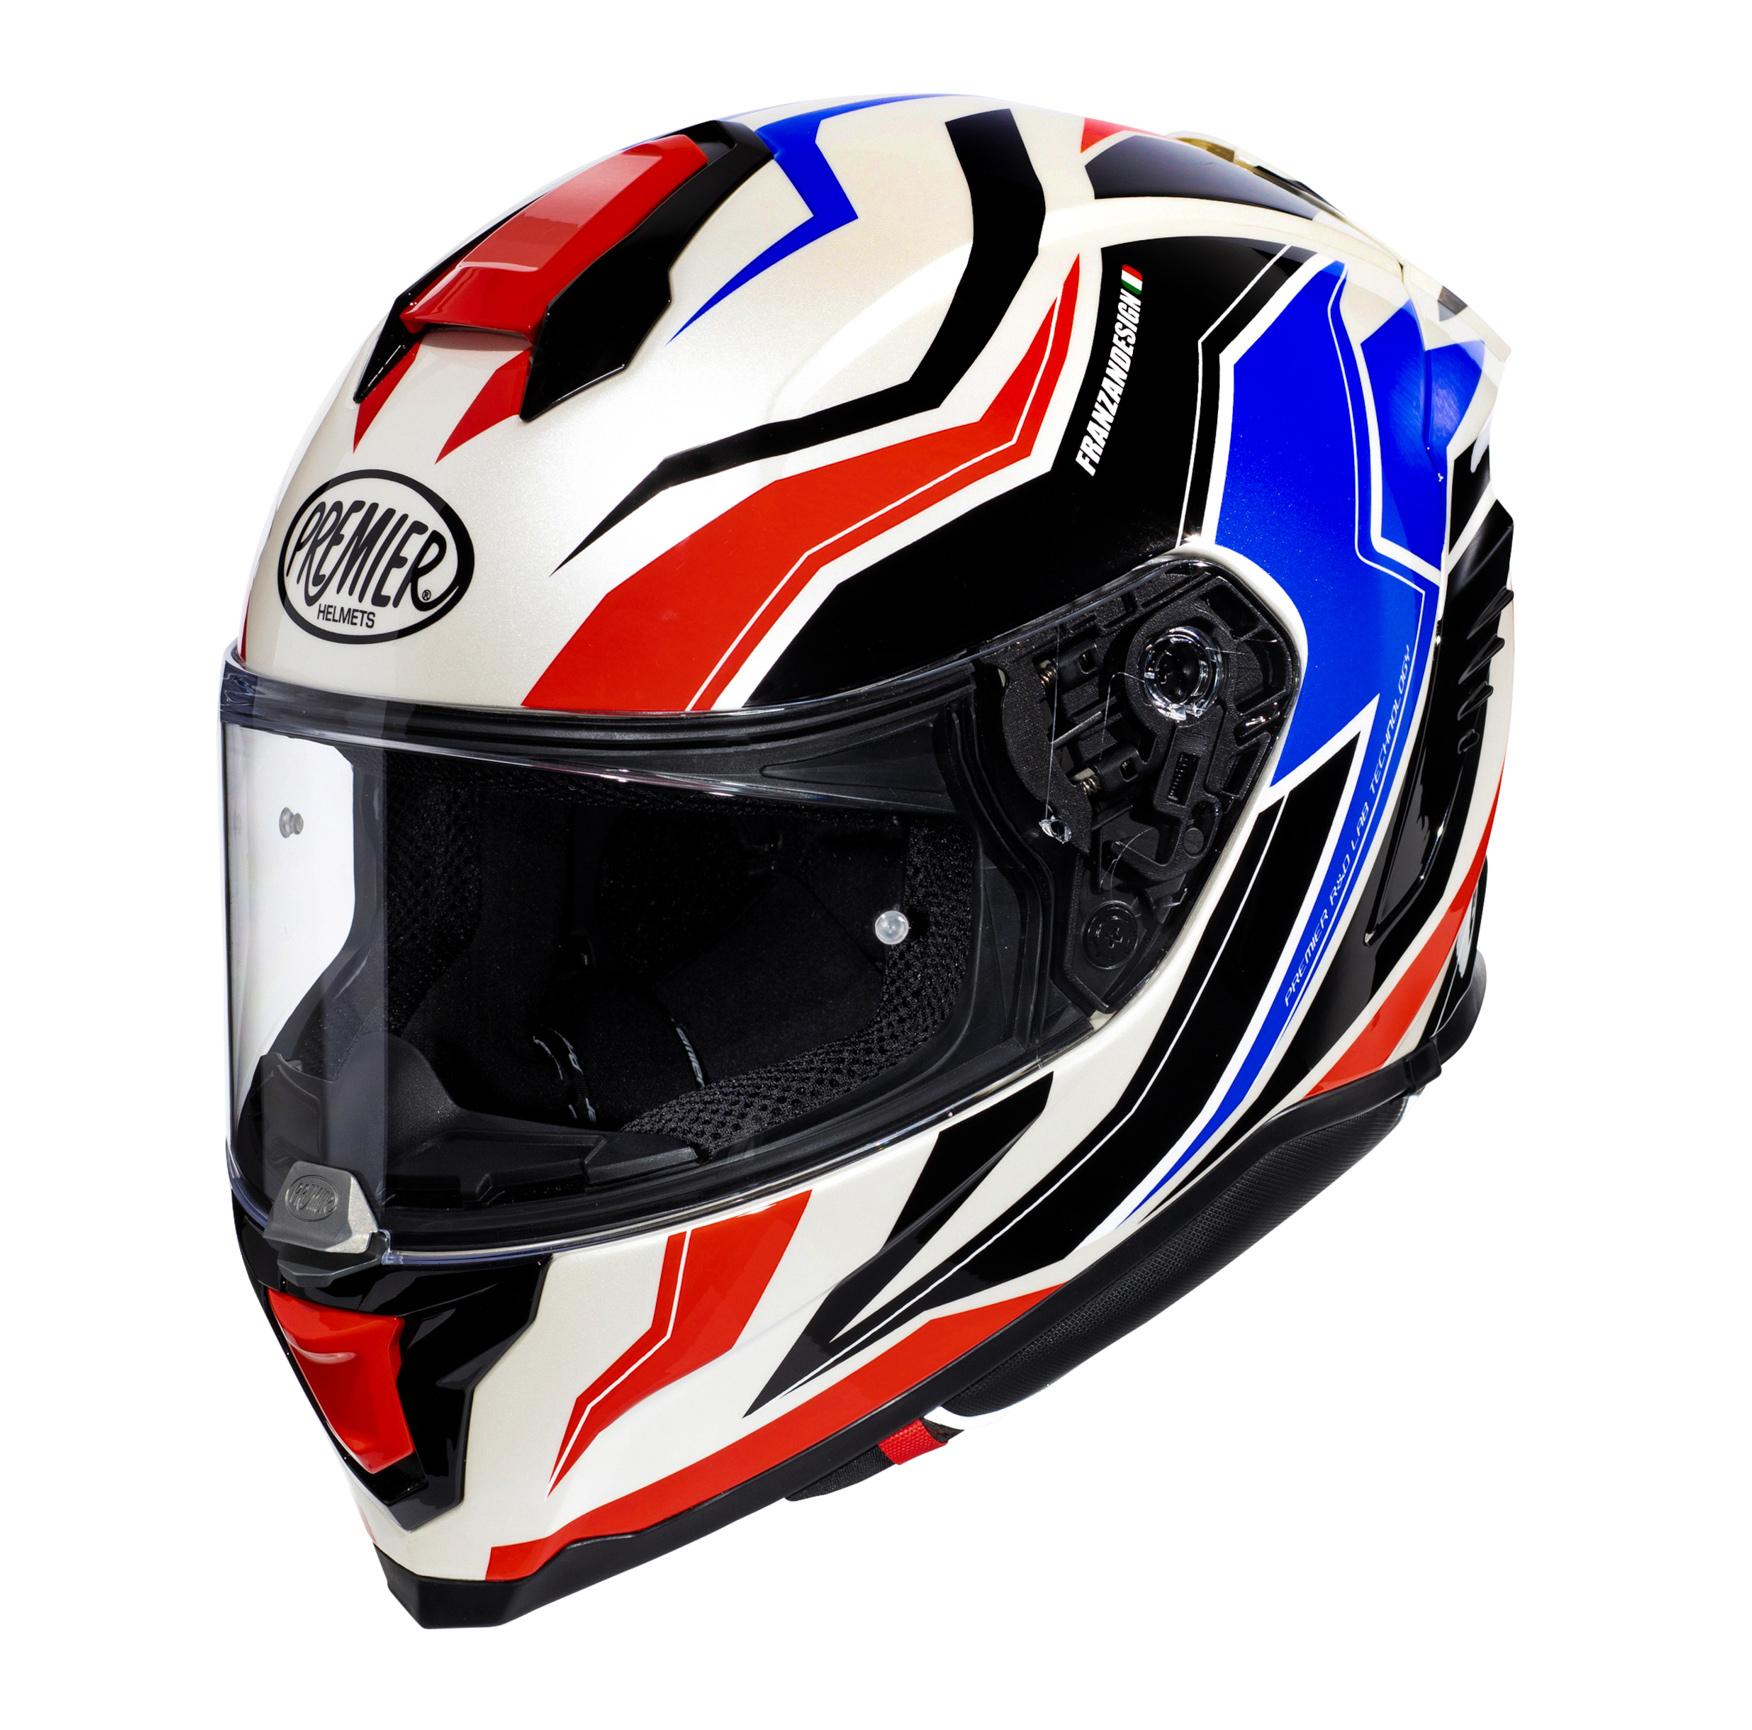 Premier Hyper Rw Full Face Motorcycle Helmet - Black/Red/White, L